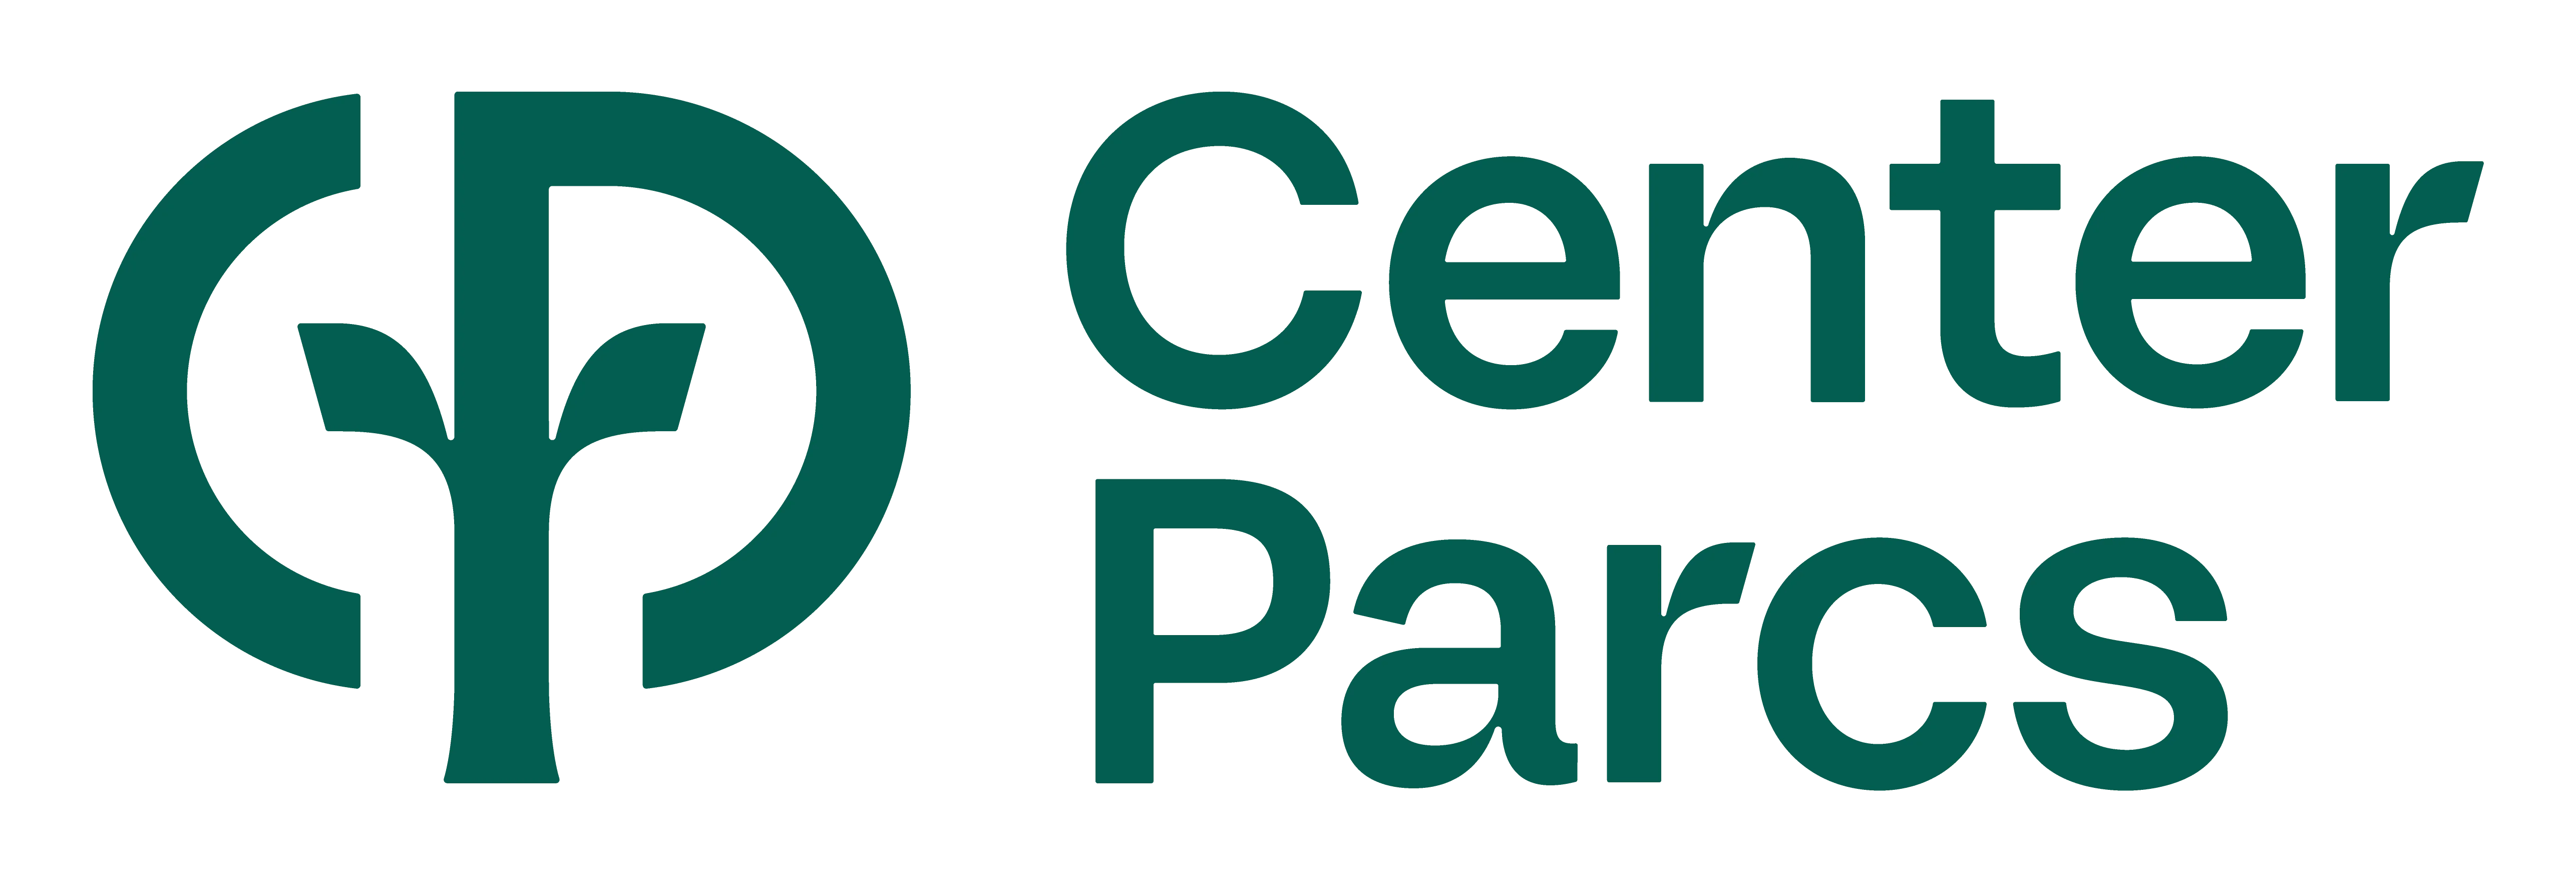 logo_center_parcs